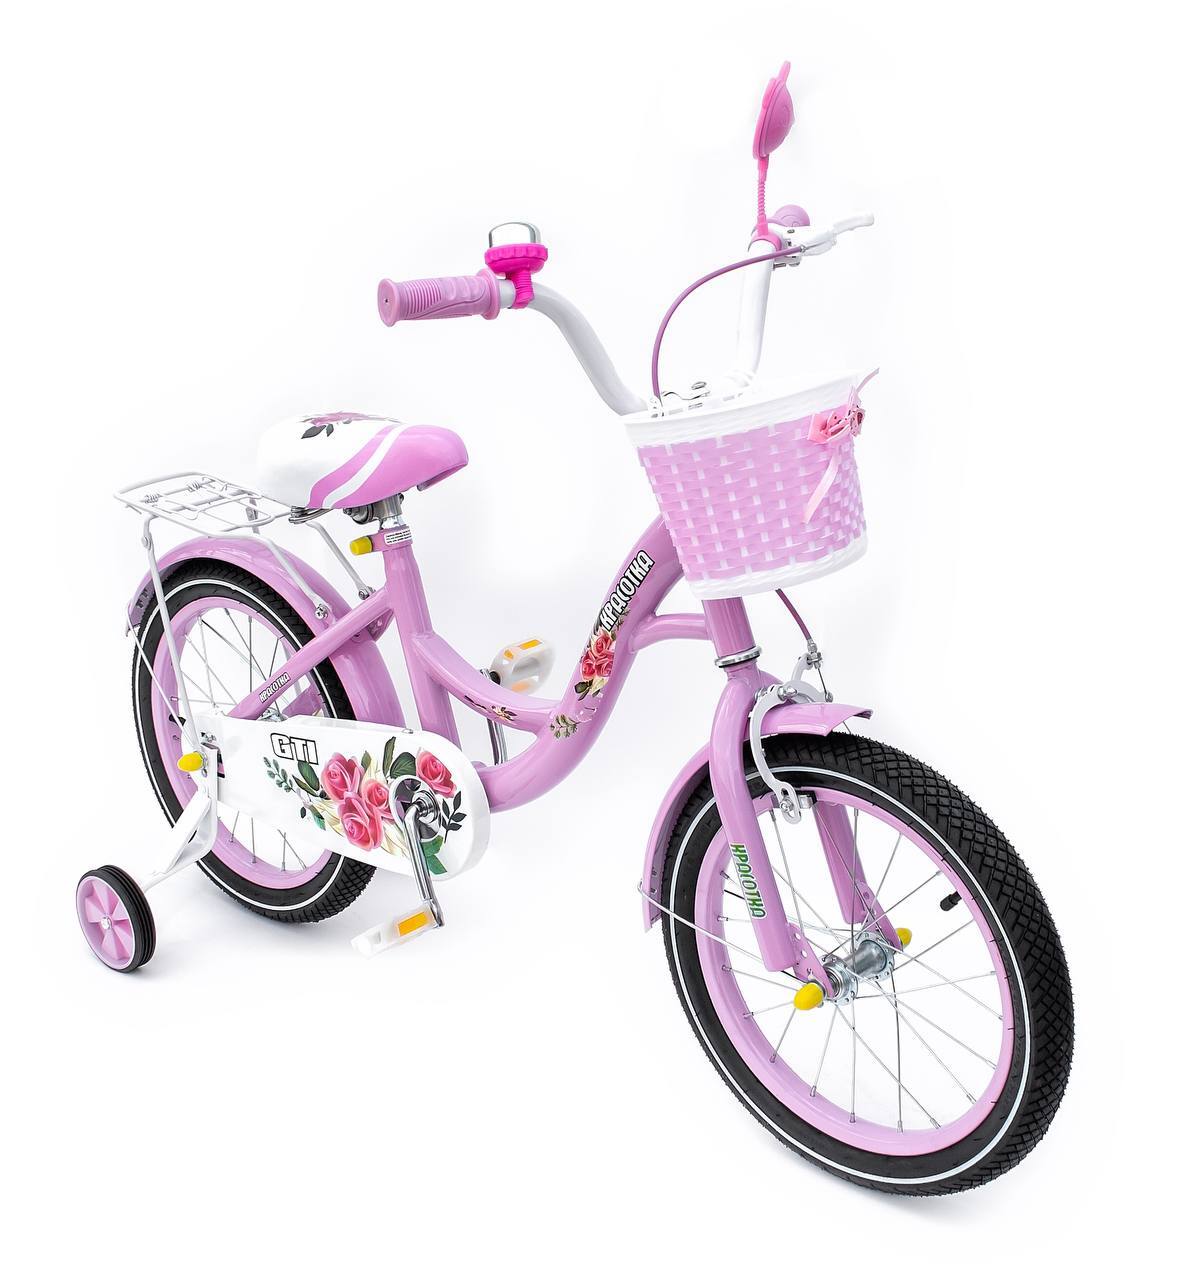 Велосипед розовый 14. Велосипед 14" GTI красотка. Велосипед stels детский розовый с корзиной. Велосипед stels Junior 220. Детский велосипед розовый с корзинкой стелс.